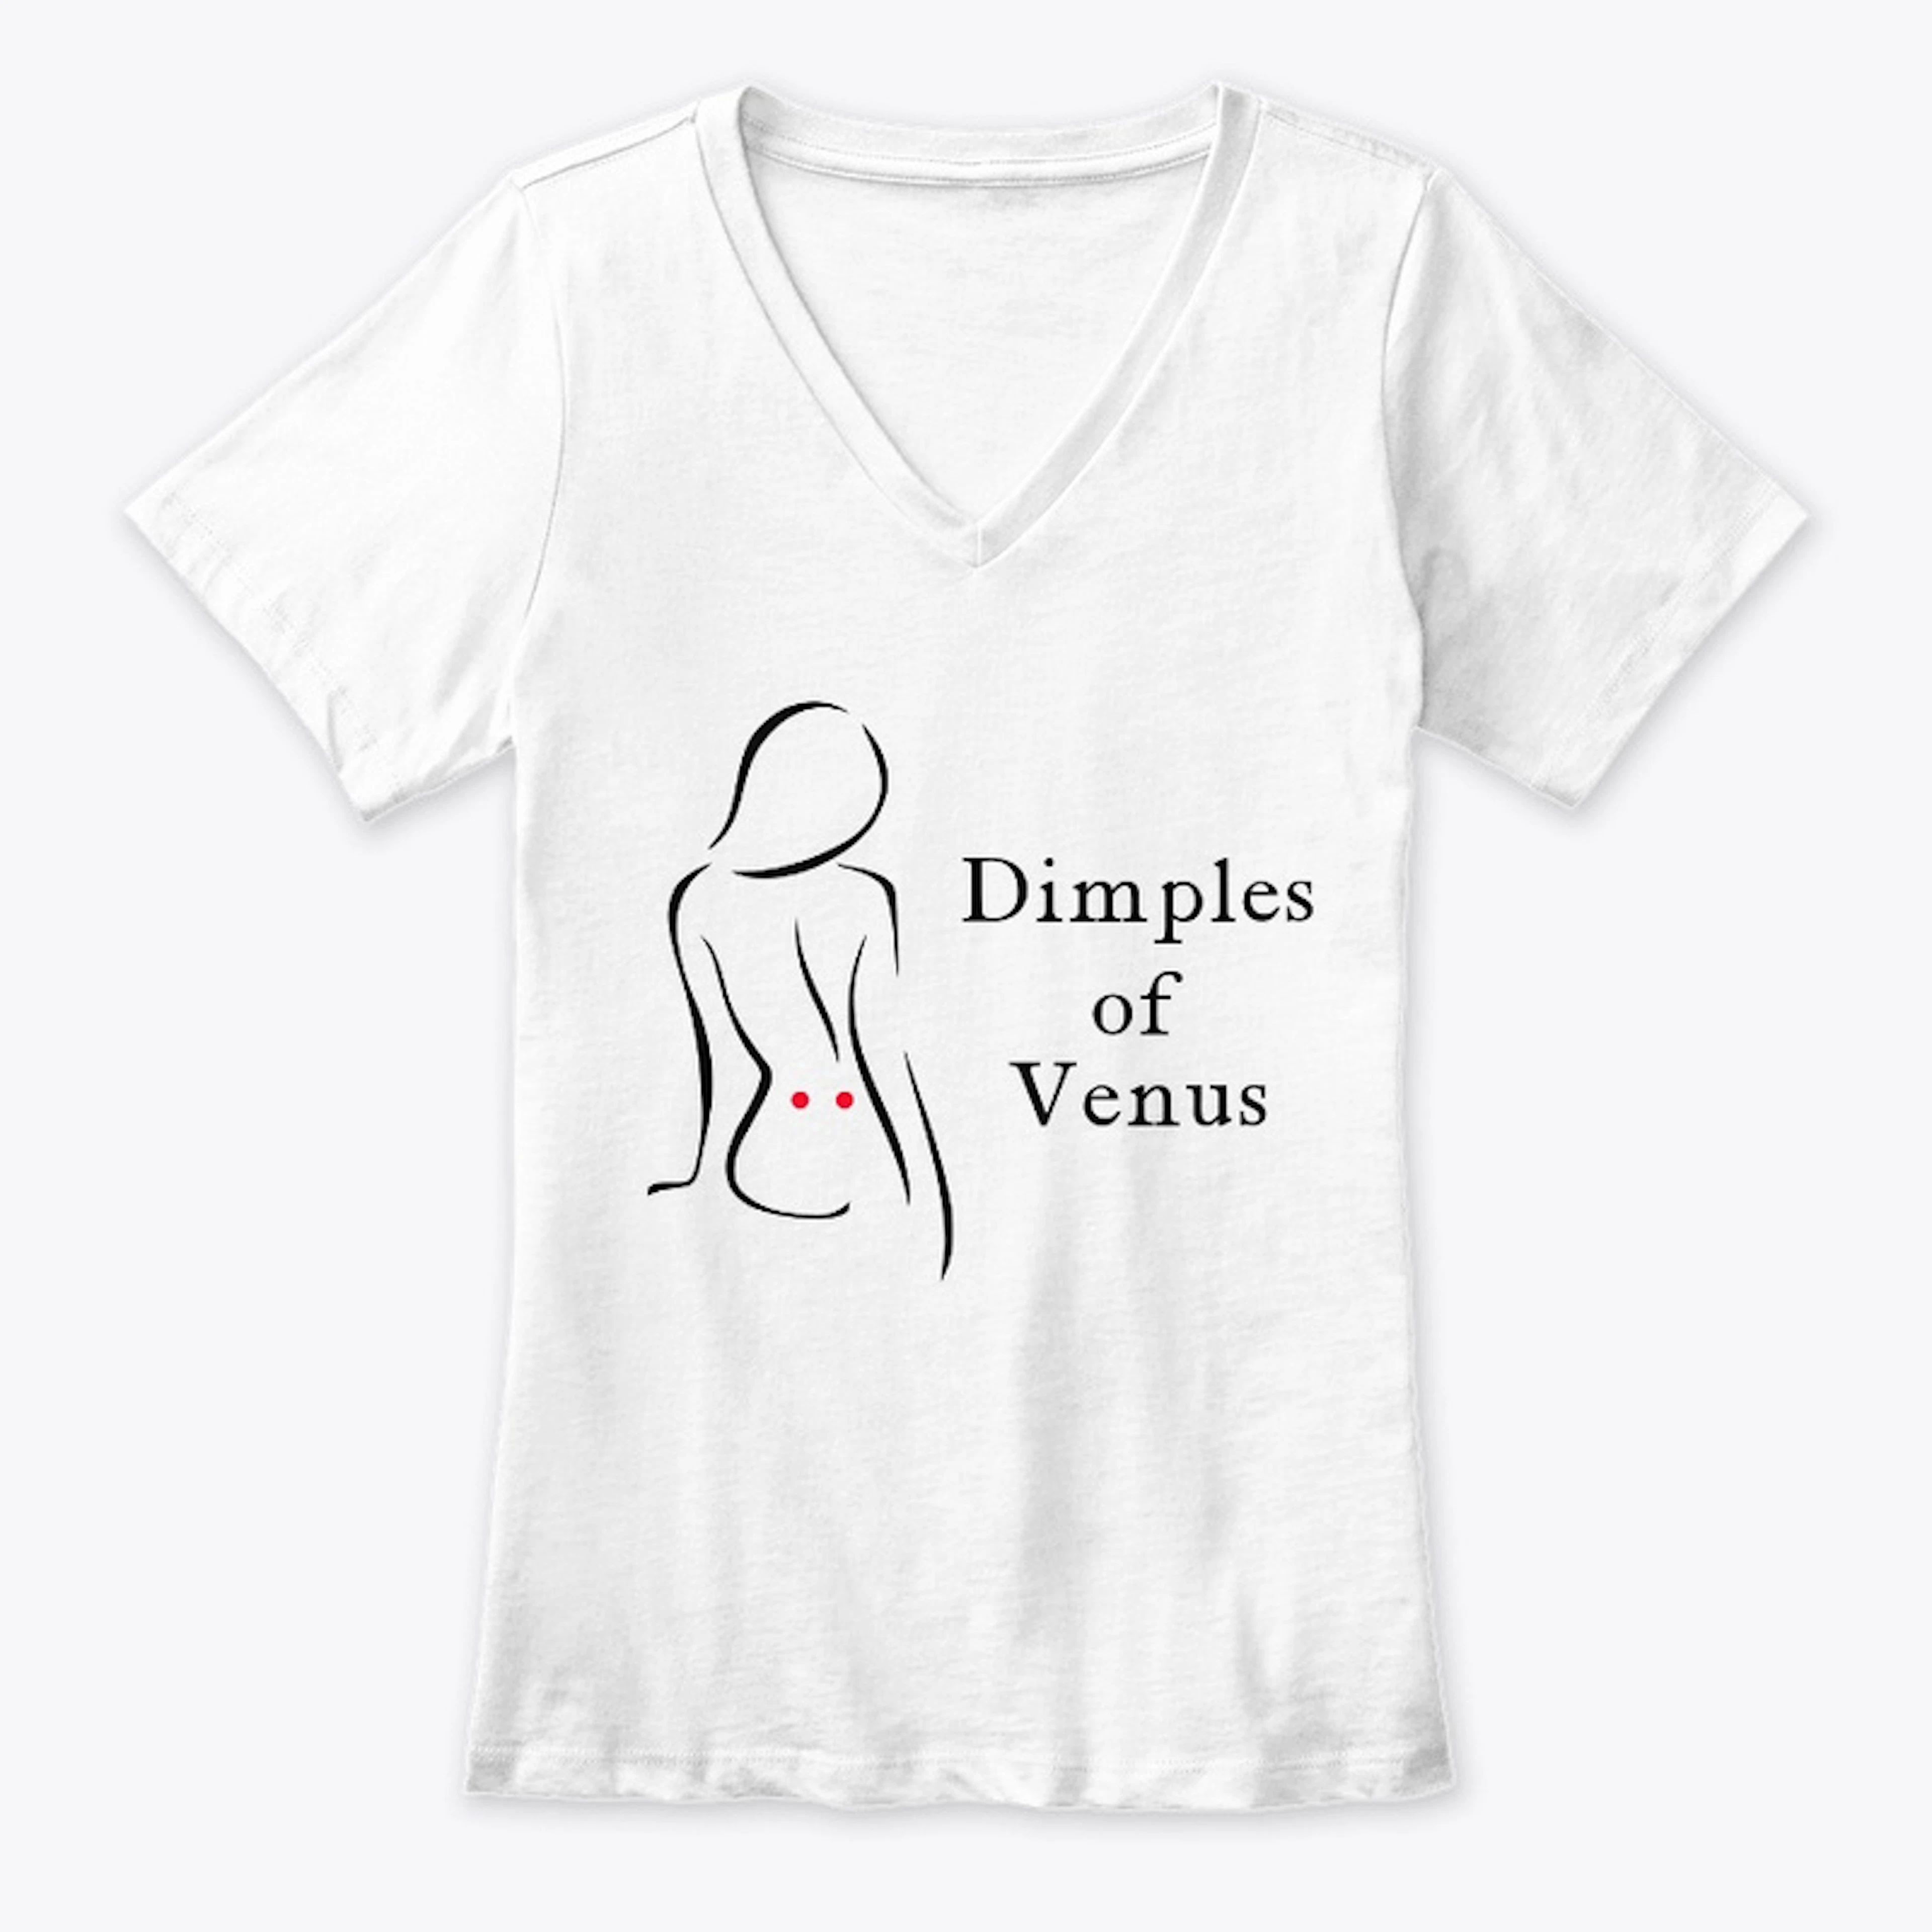 Dimples of Venus